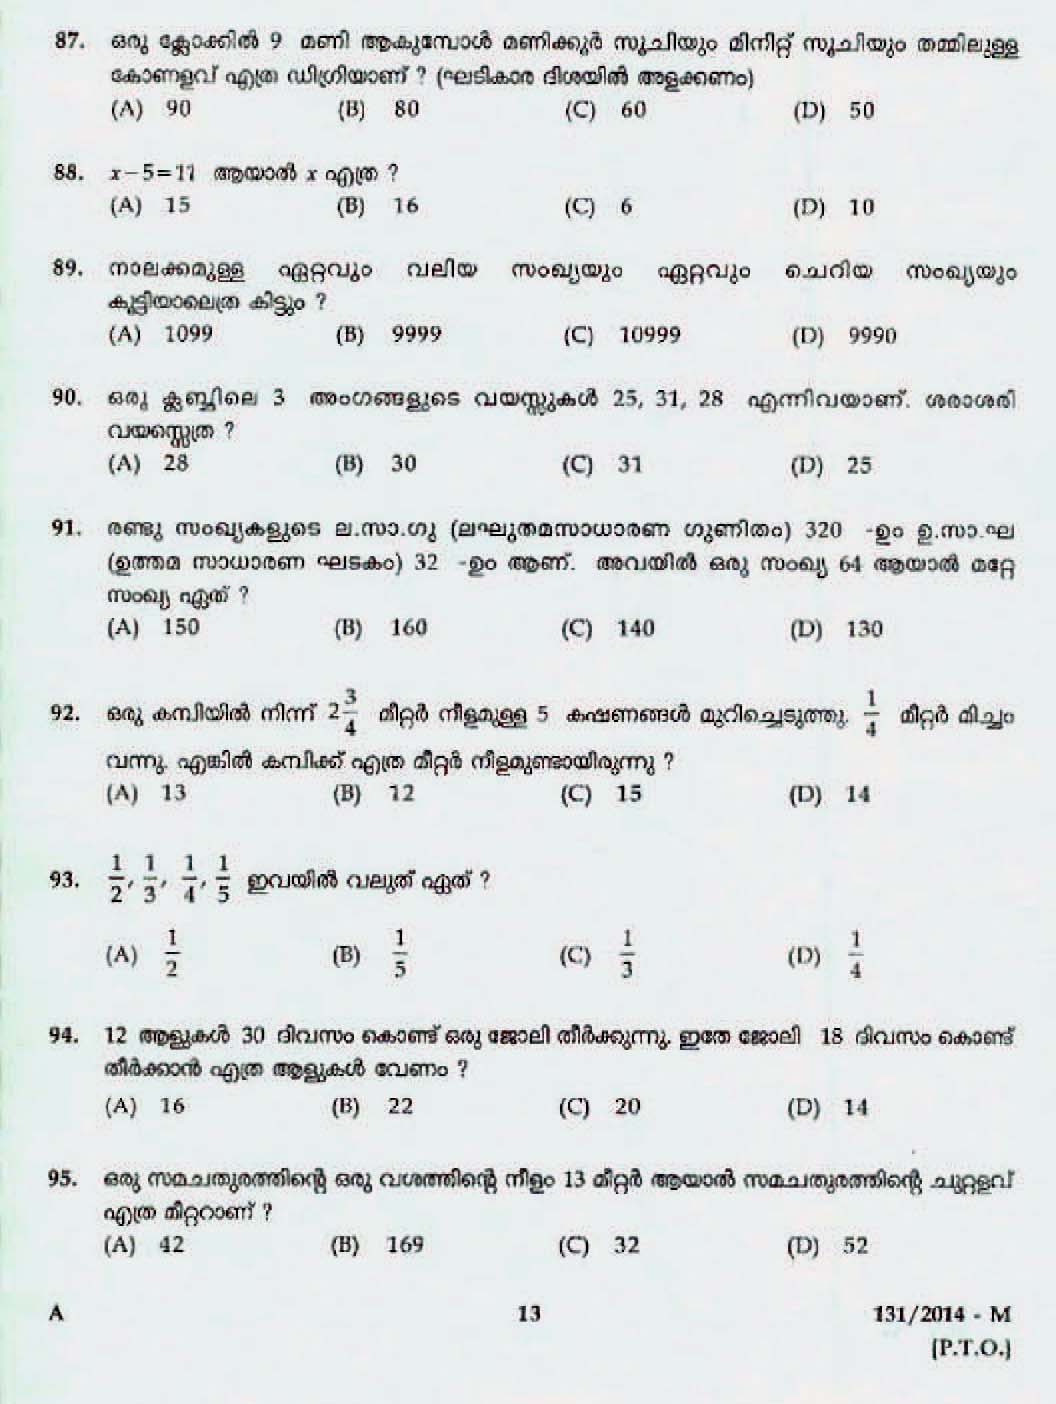 Kerala Last Grade Servants Exam 2014 Question Paper Code 1312014 M 11